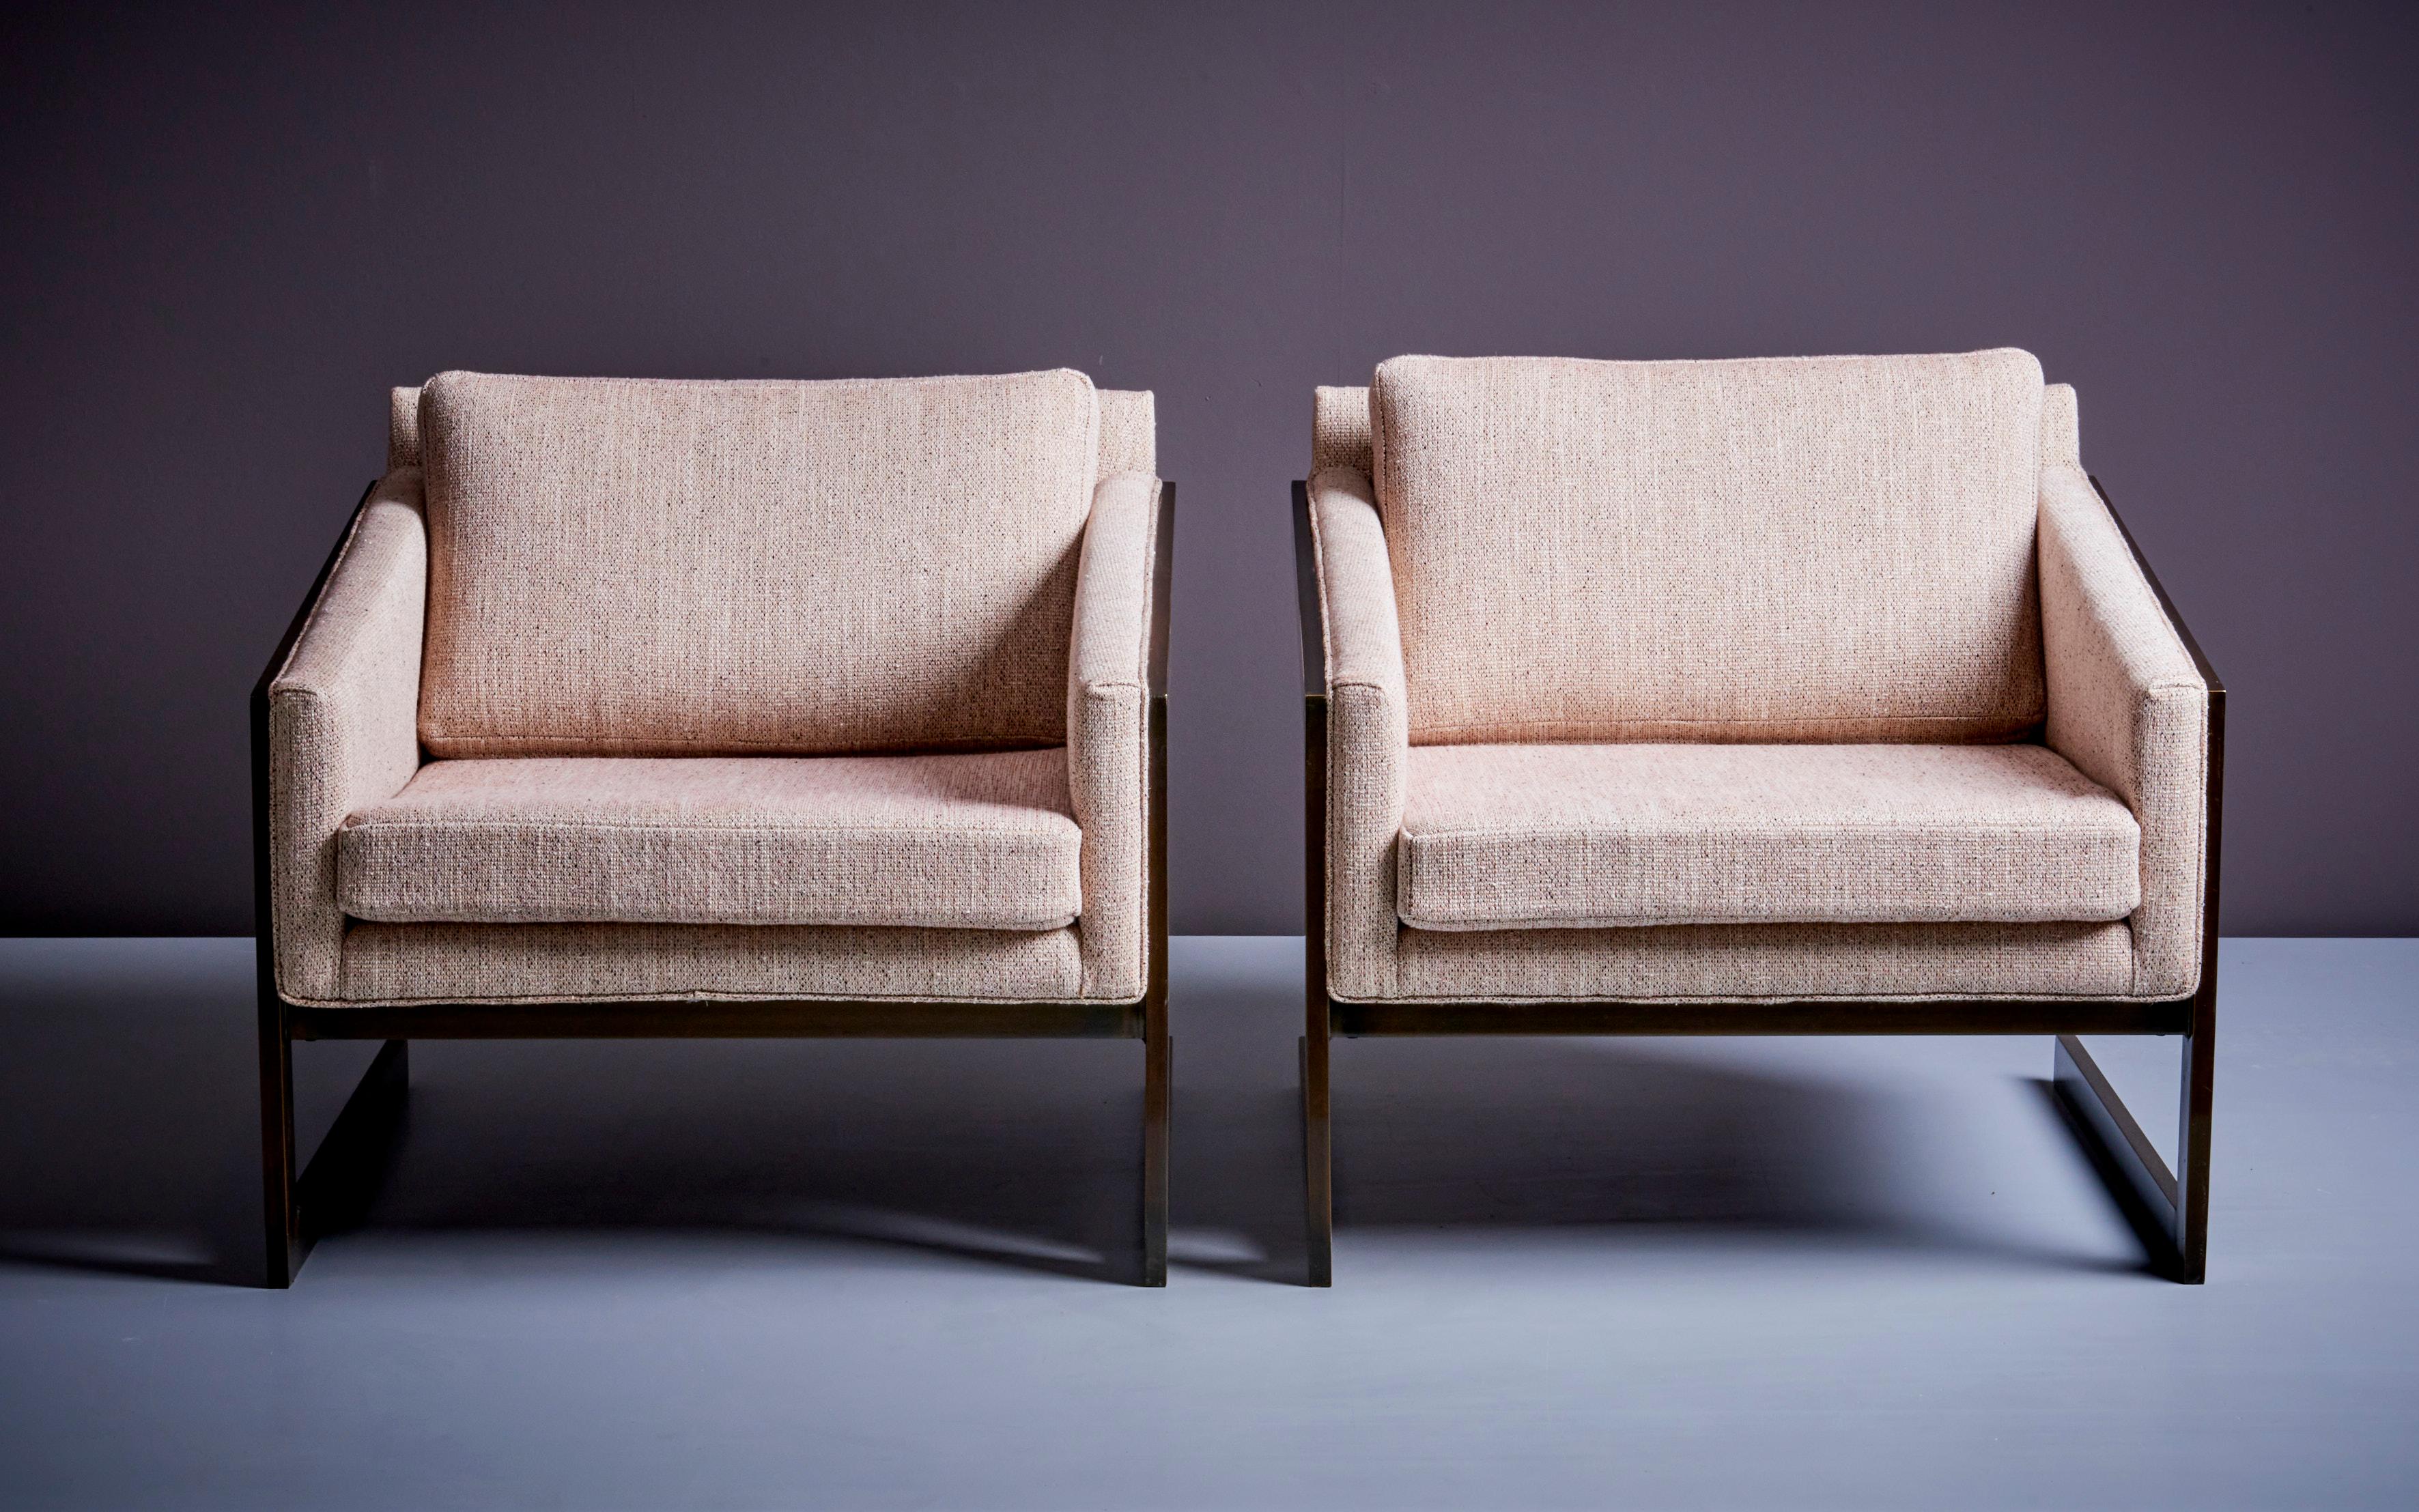 Schönes Paar Freischwinger-Sessel von Silver Craft in einem neu gepolsterten Stoff und einem Bronze-Finish. Gepolstert mit Chase Erwin-Stoff.
  